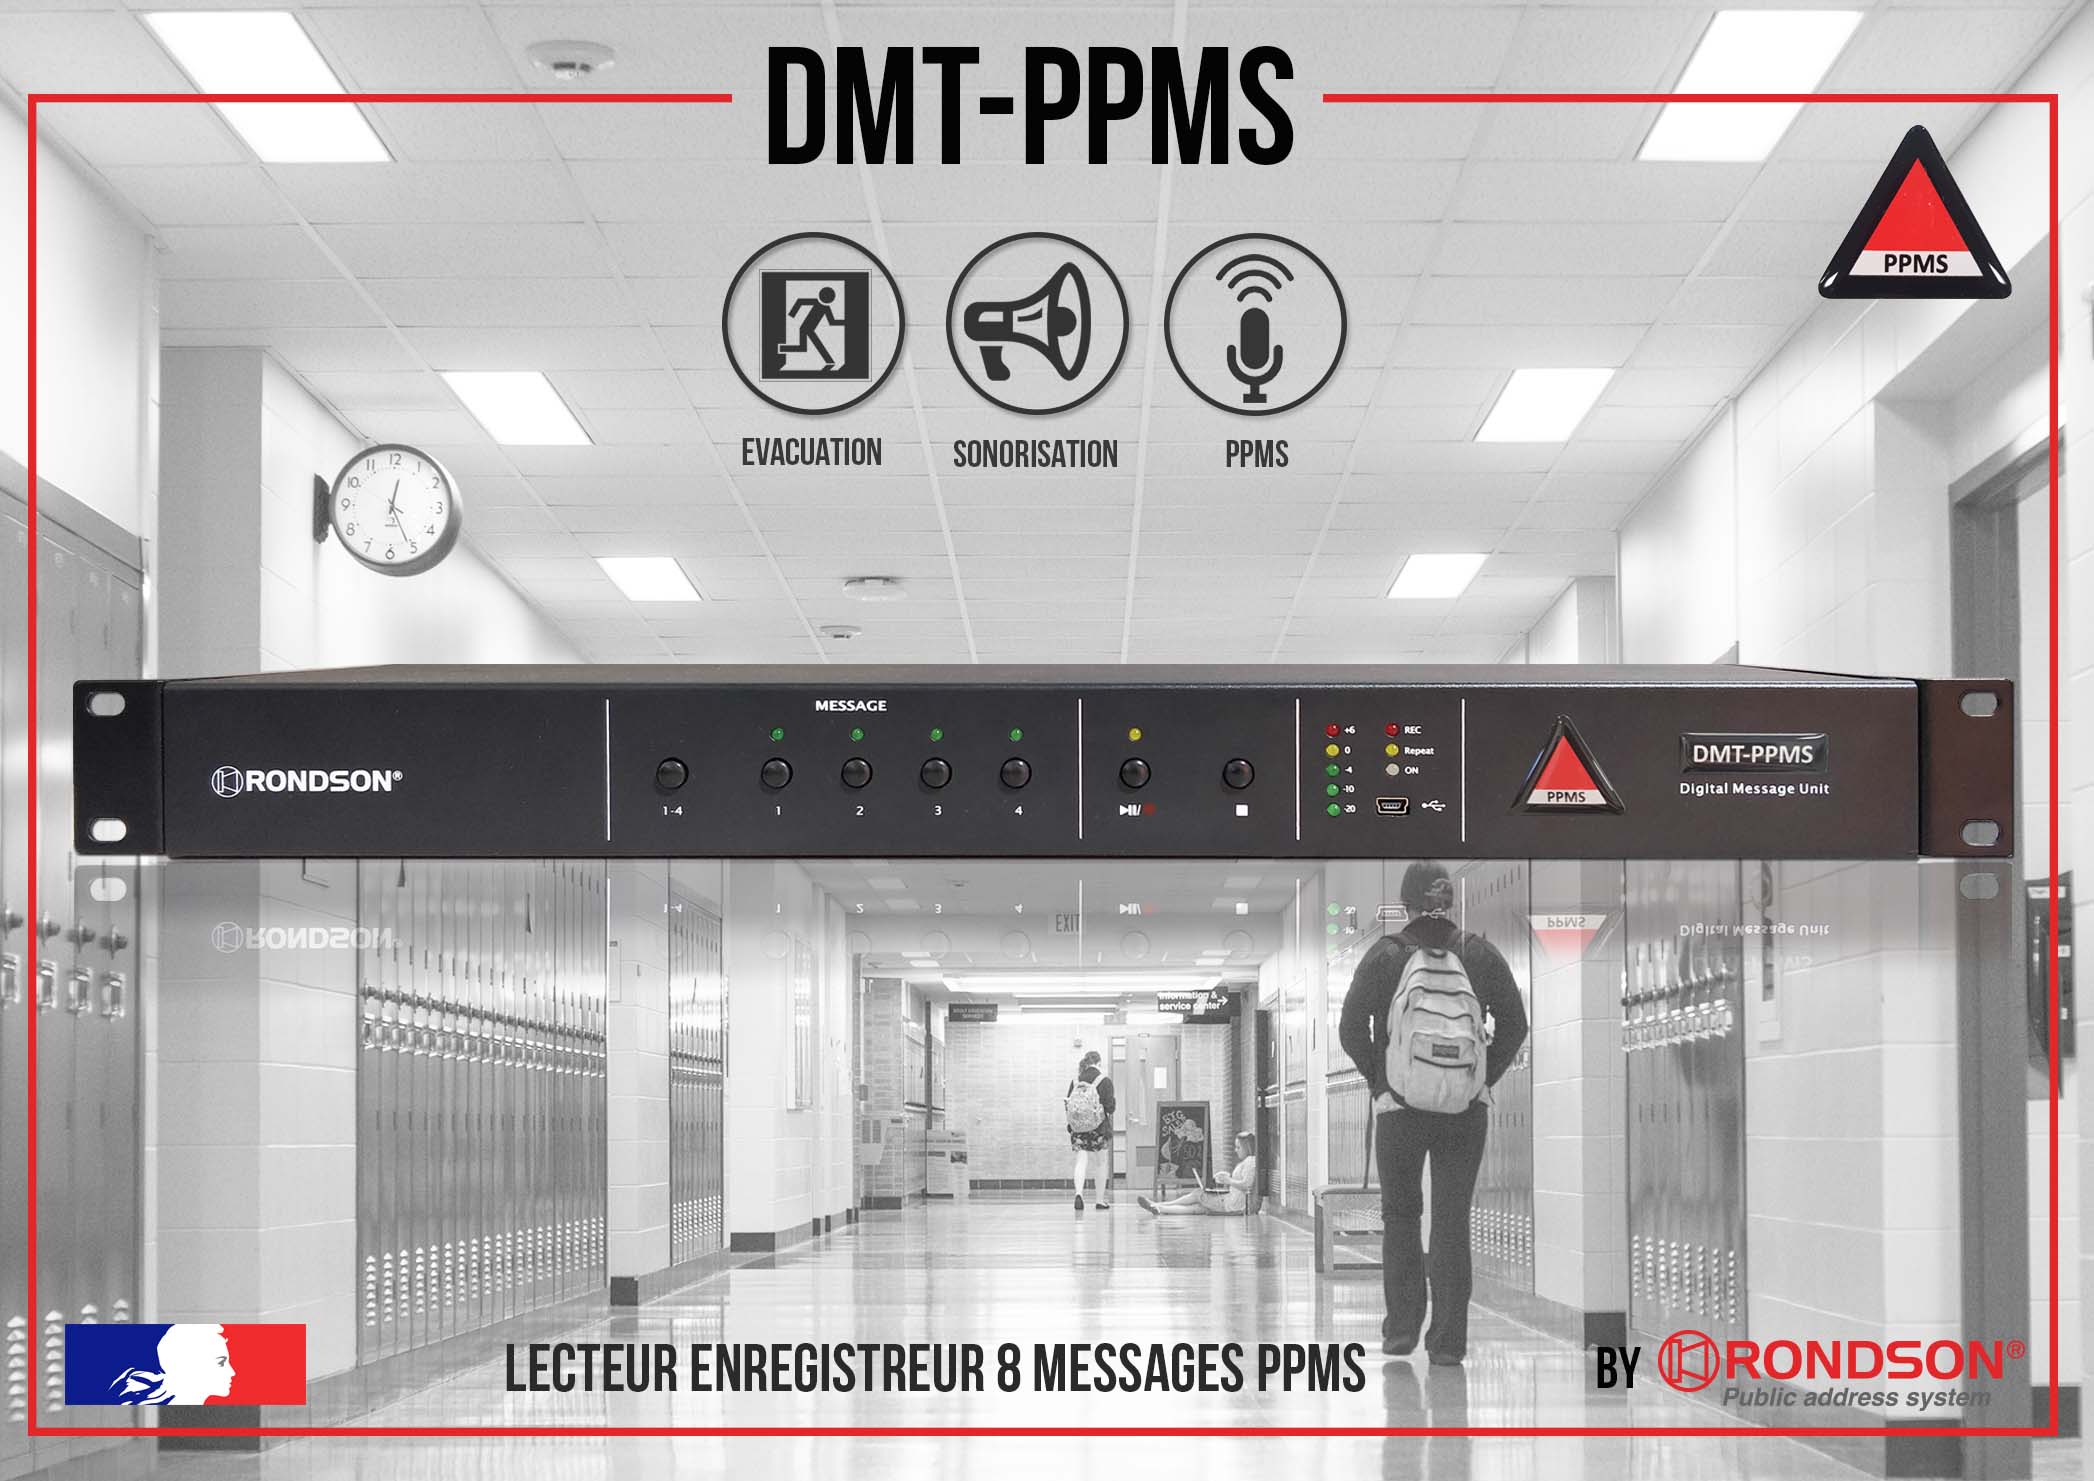 DMT-PPMS